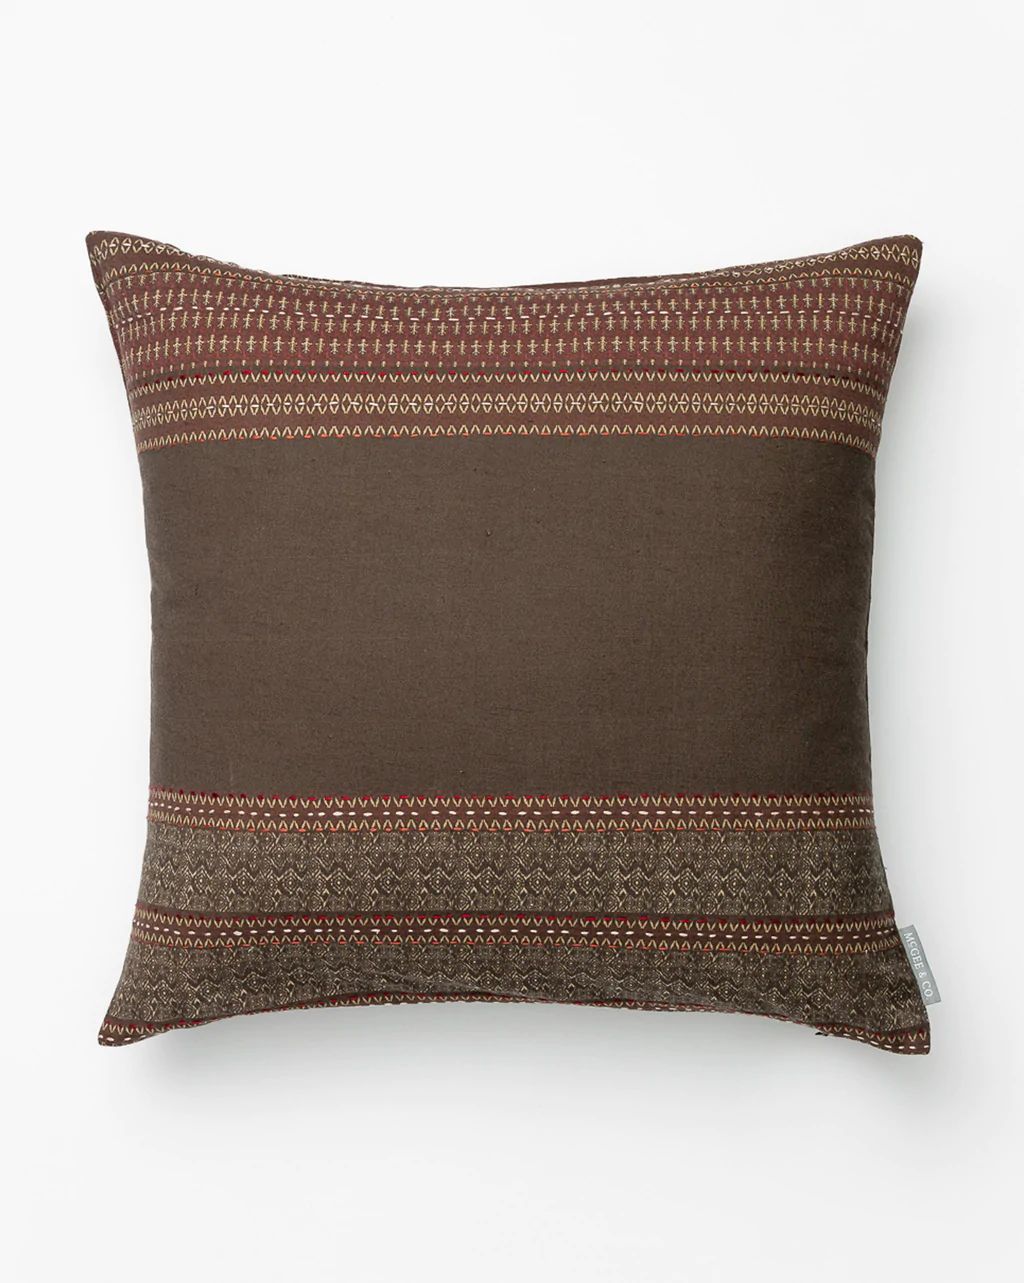 Isadora Pillow Cover | McGee & Co.